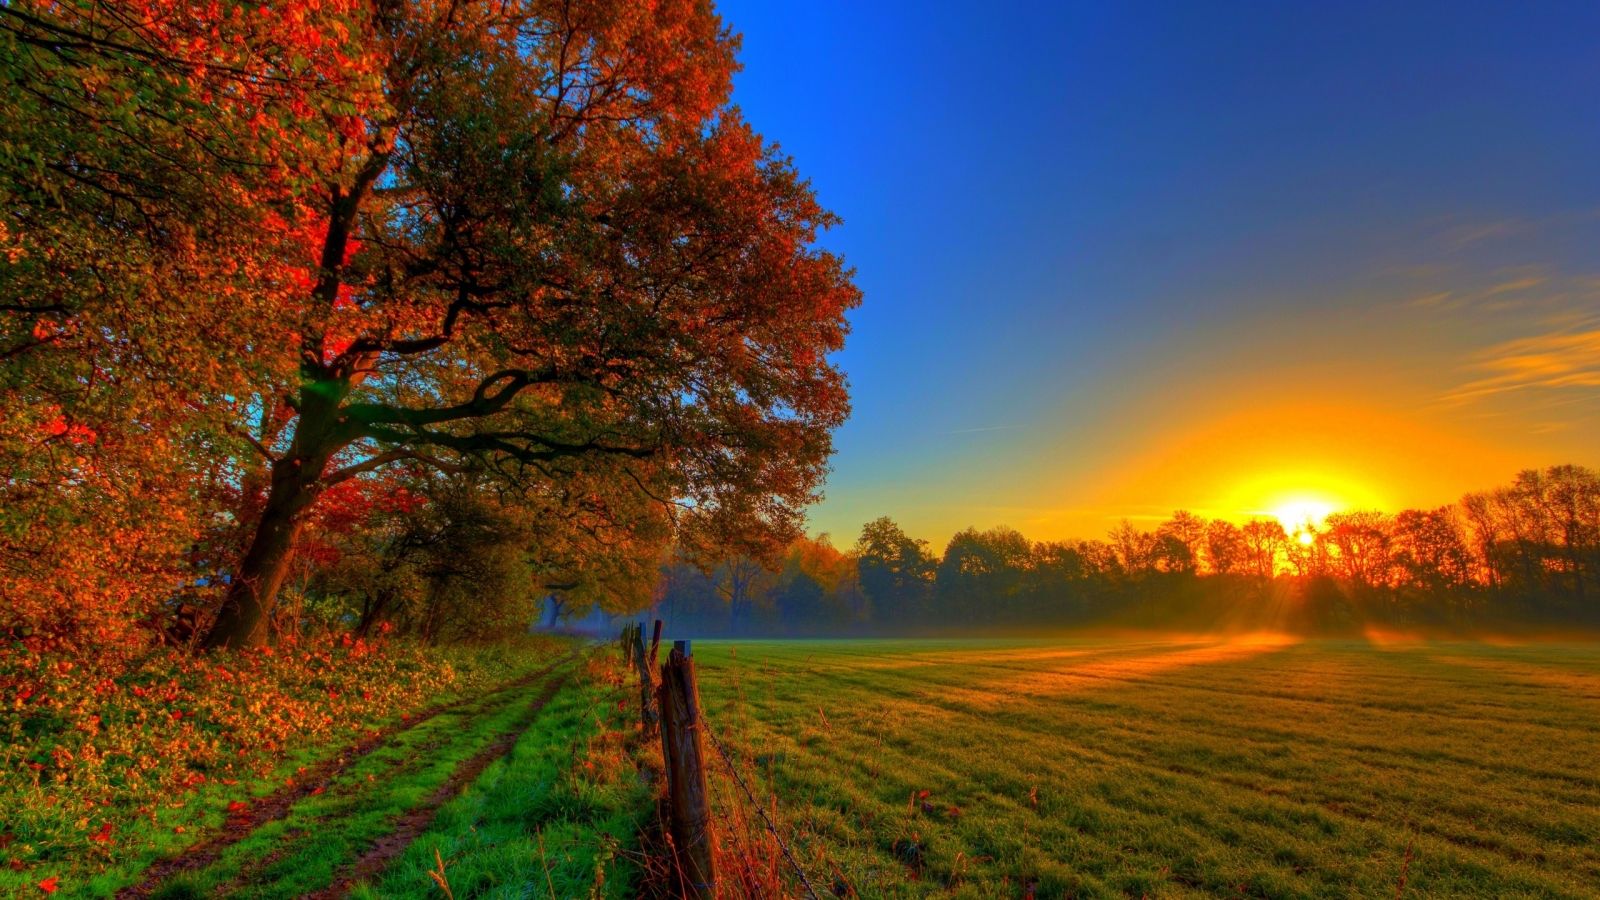 Beautiful Autumn Sunset for 1600 x 900 HDTV resolution